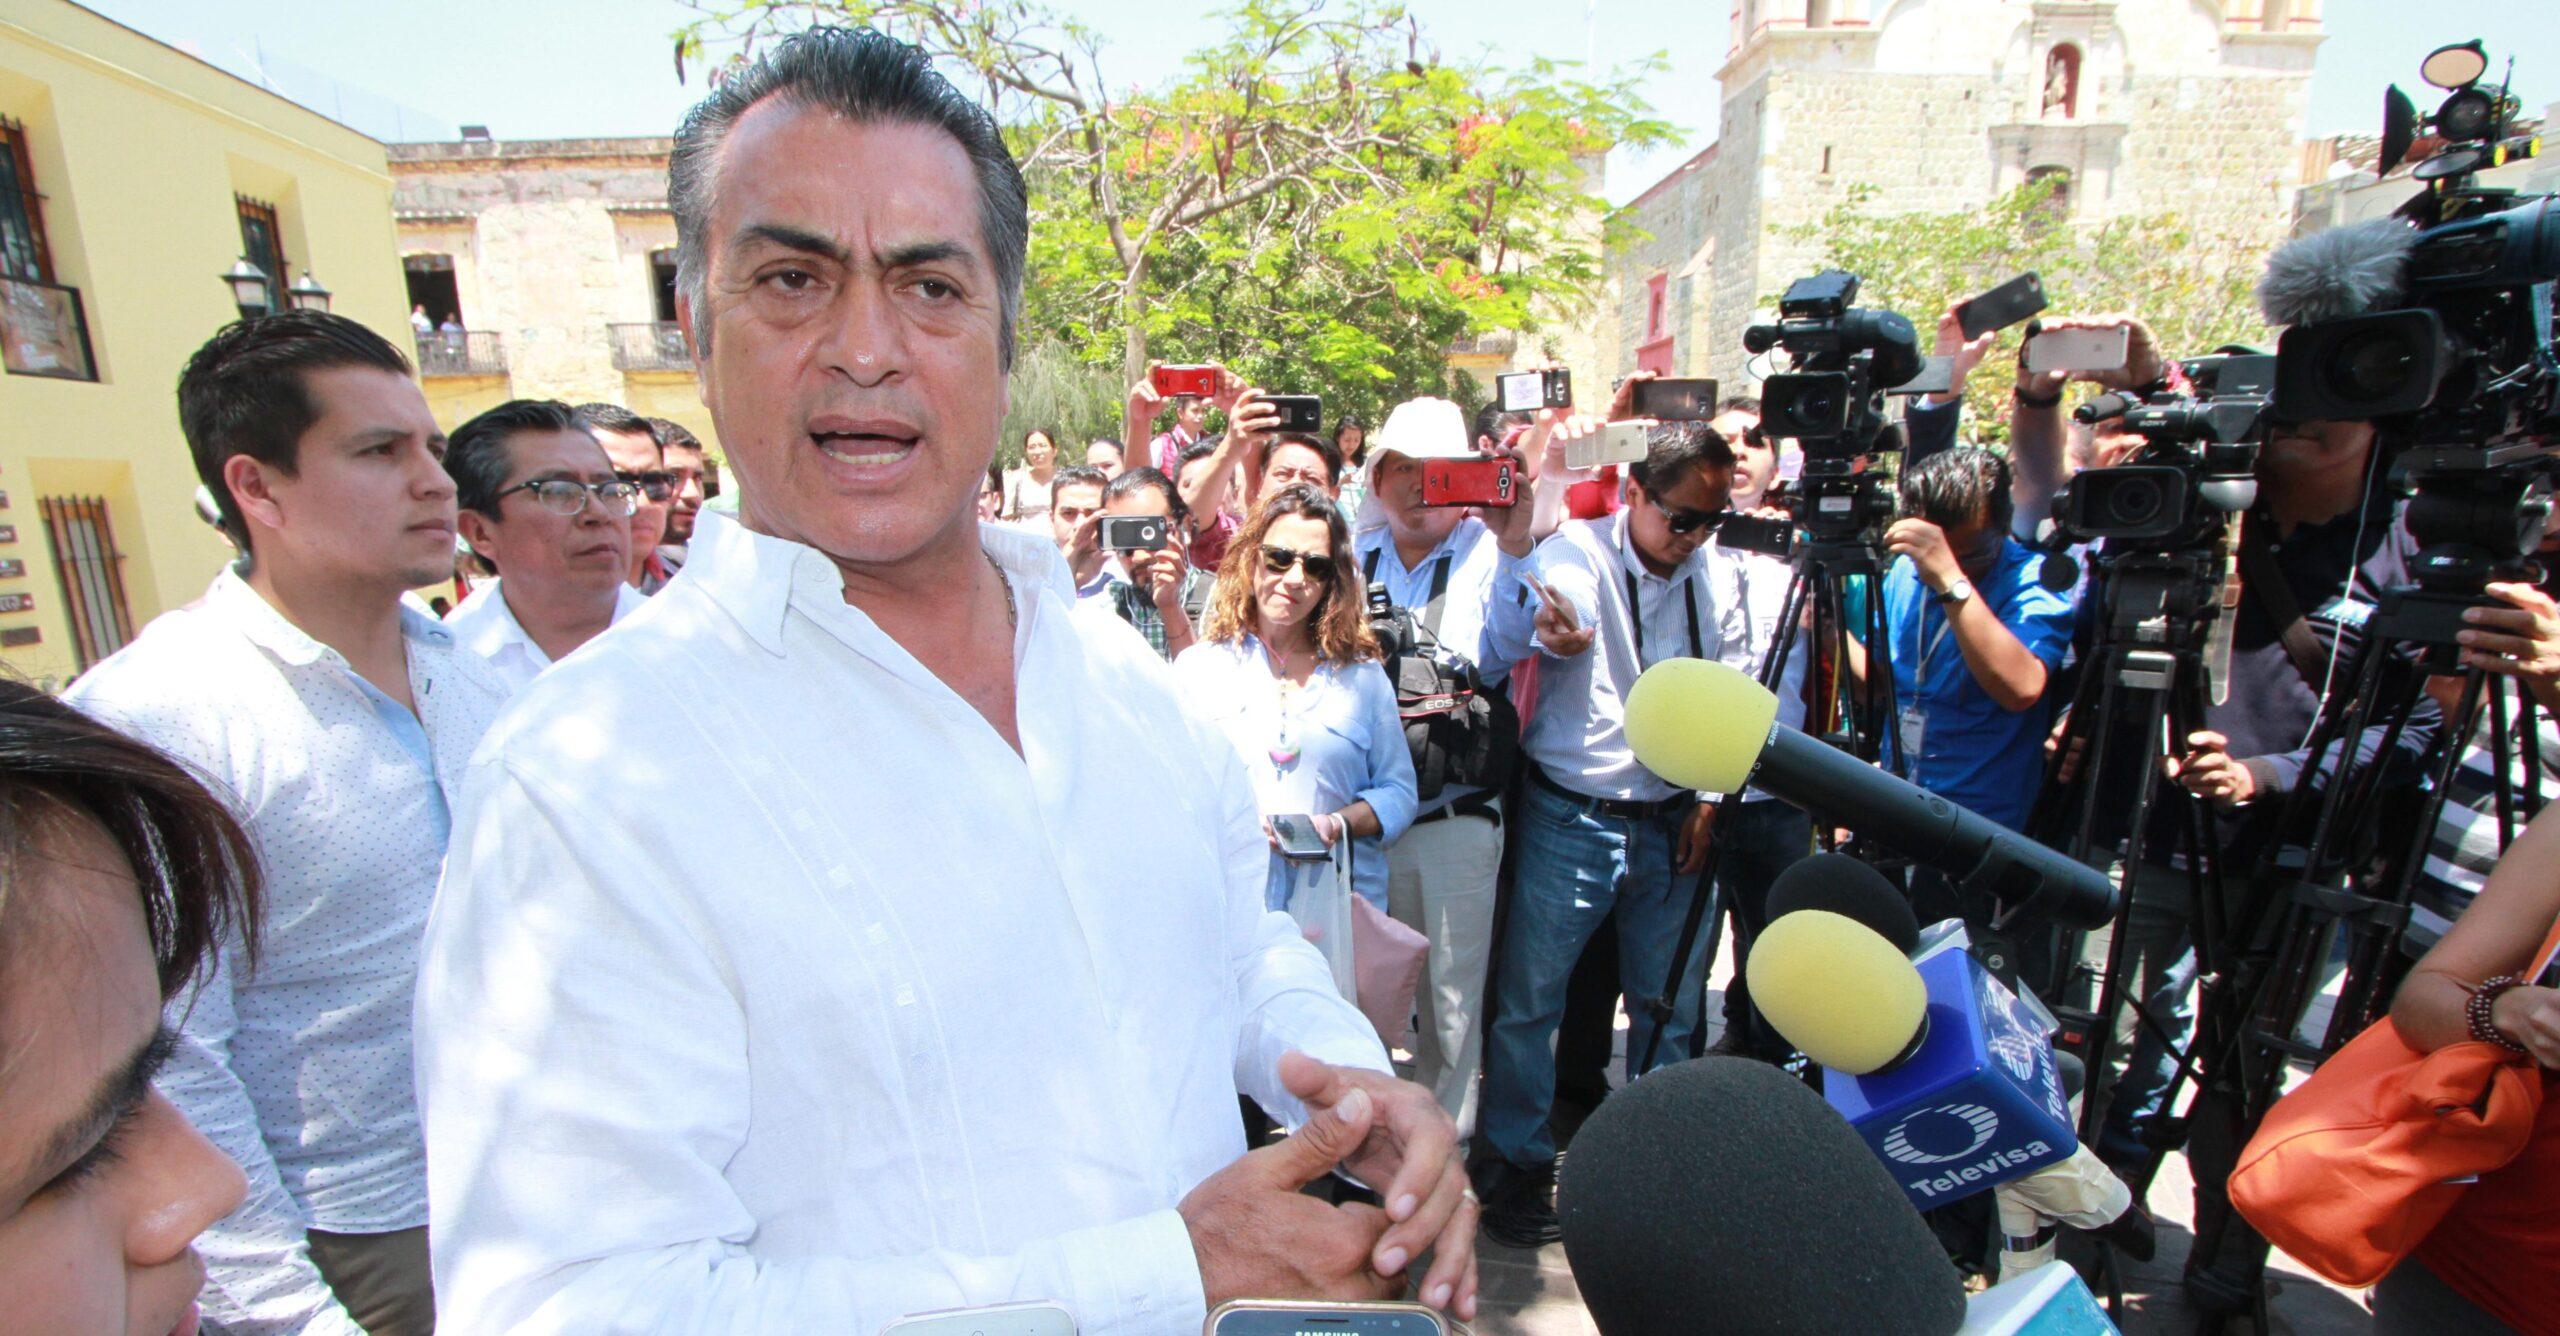 Jaime Rodríguez, El Bronco, pide ayuda a seguidores para delimitar los temas del debate